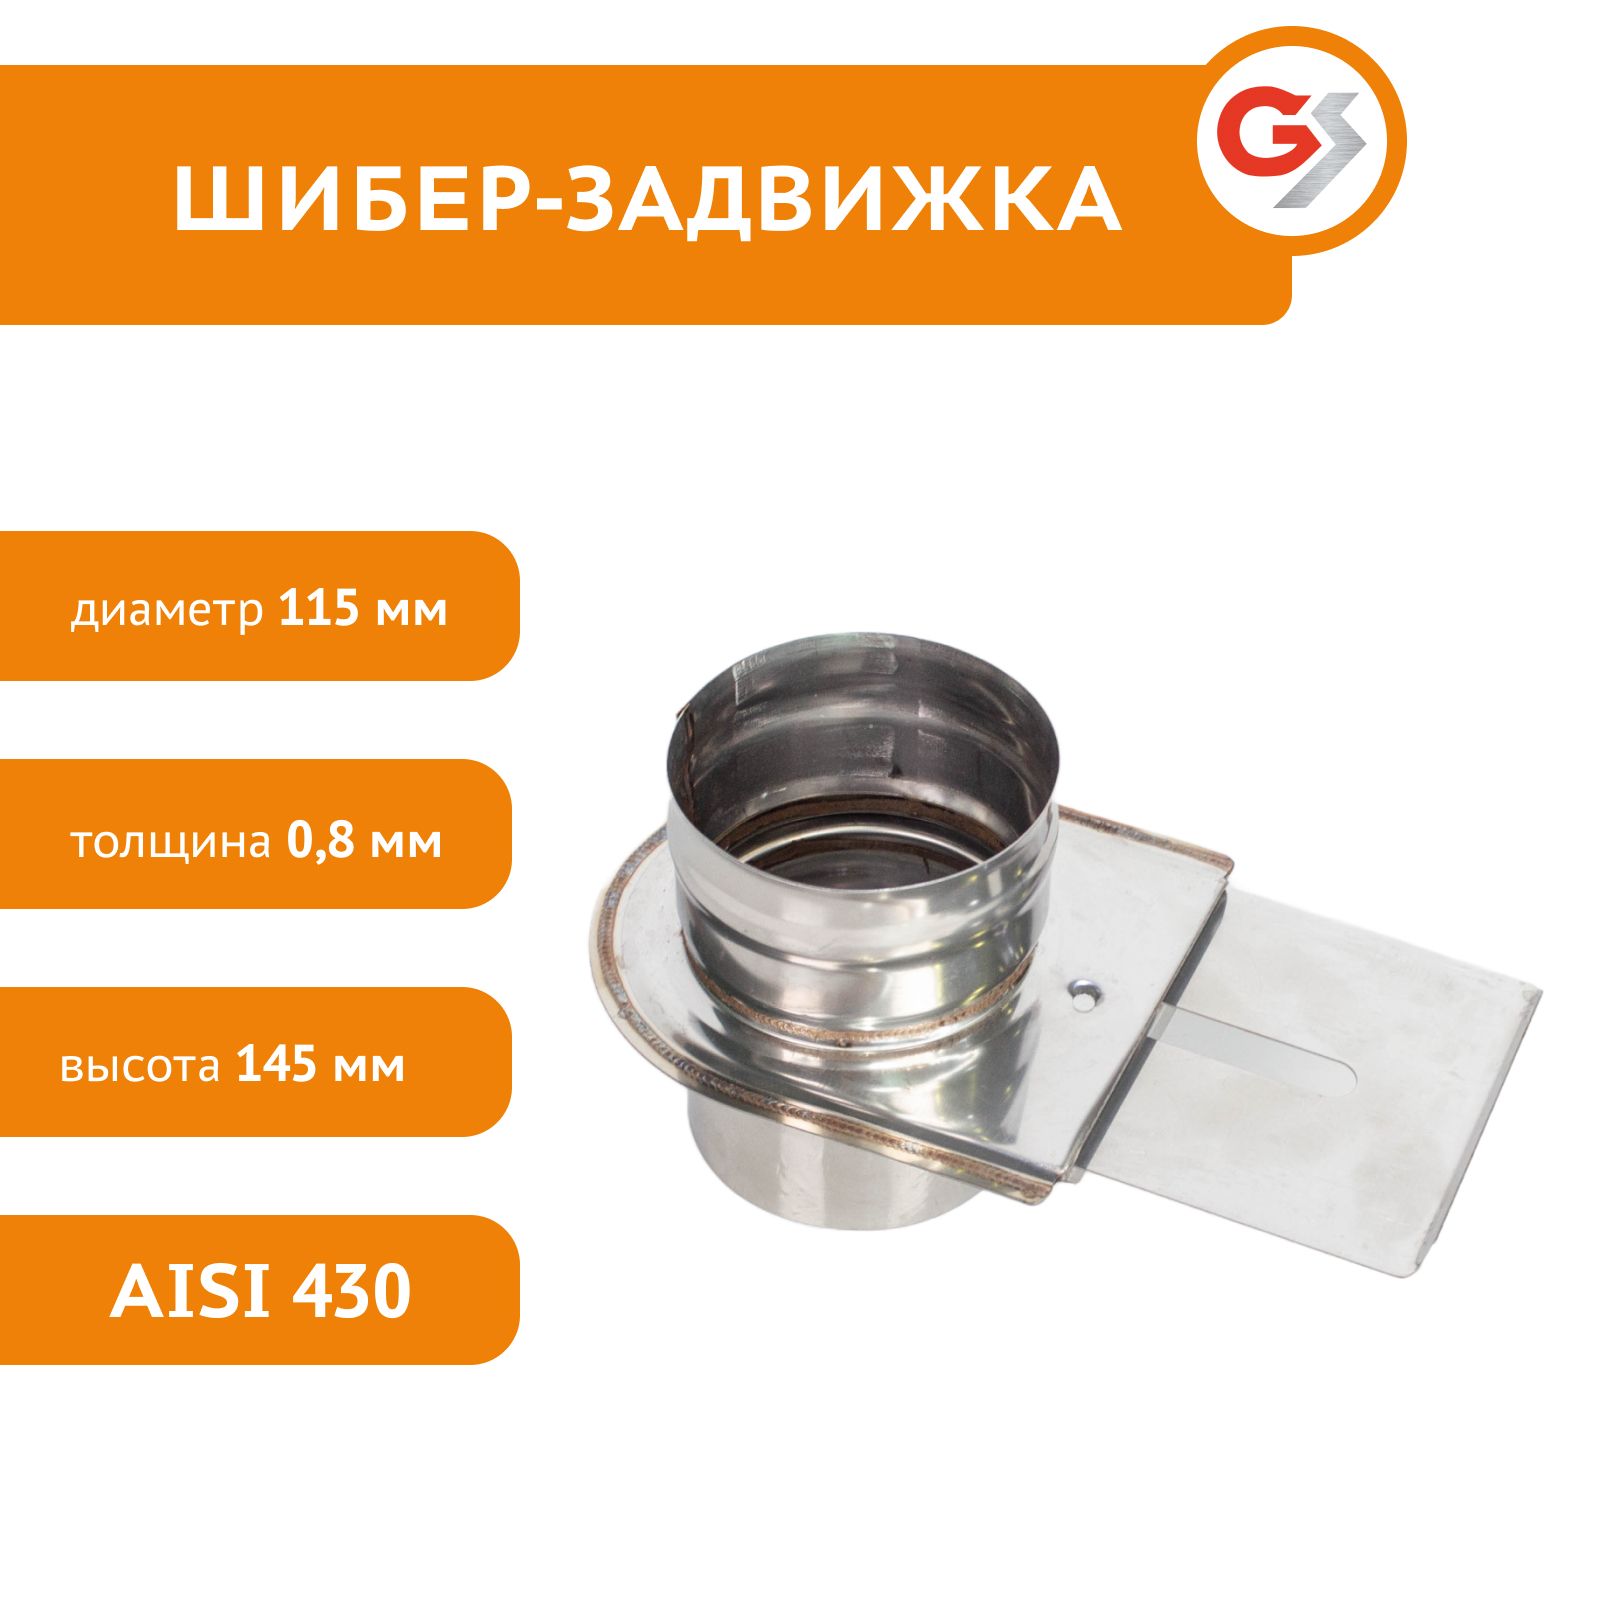 Шибер-задвижка для дымохода Гефест-сталь 115 мм нержавеющая сталь AISI 430/0,8мм - купить в Москве, цены на Мегамаркет